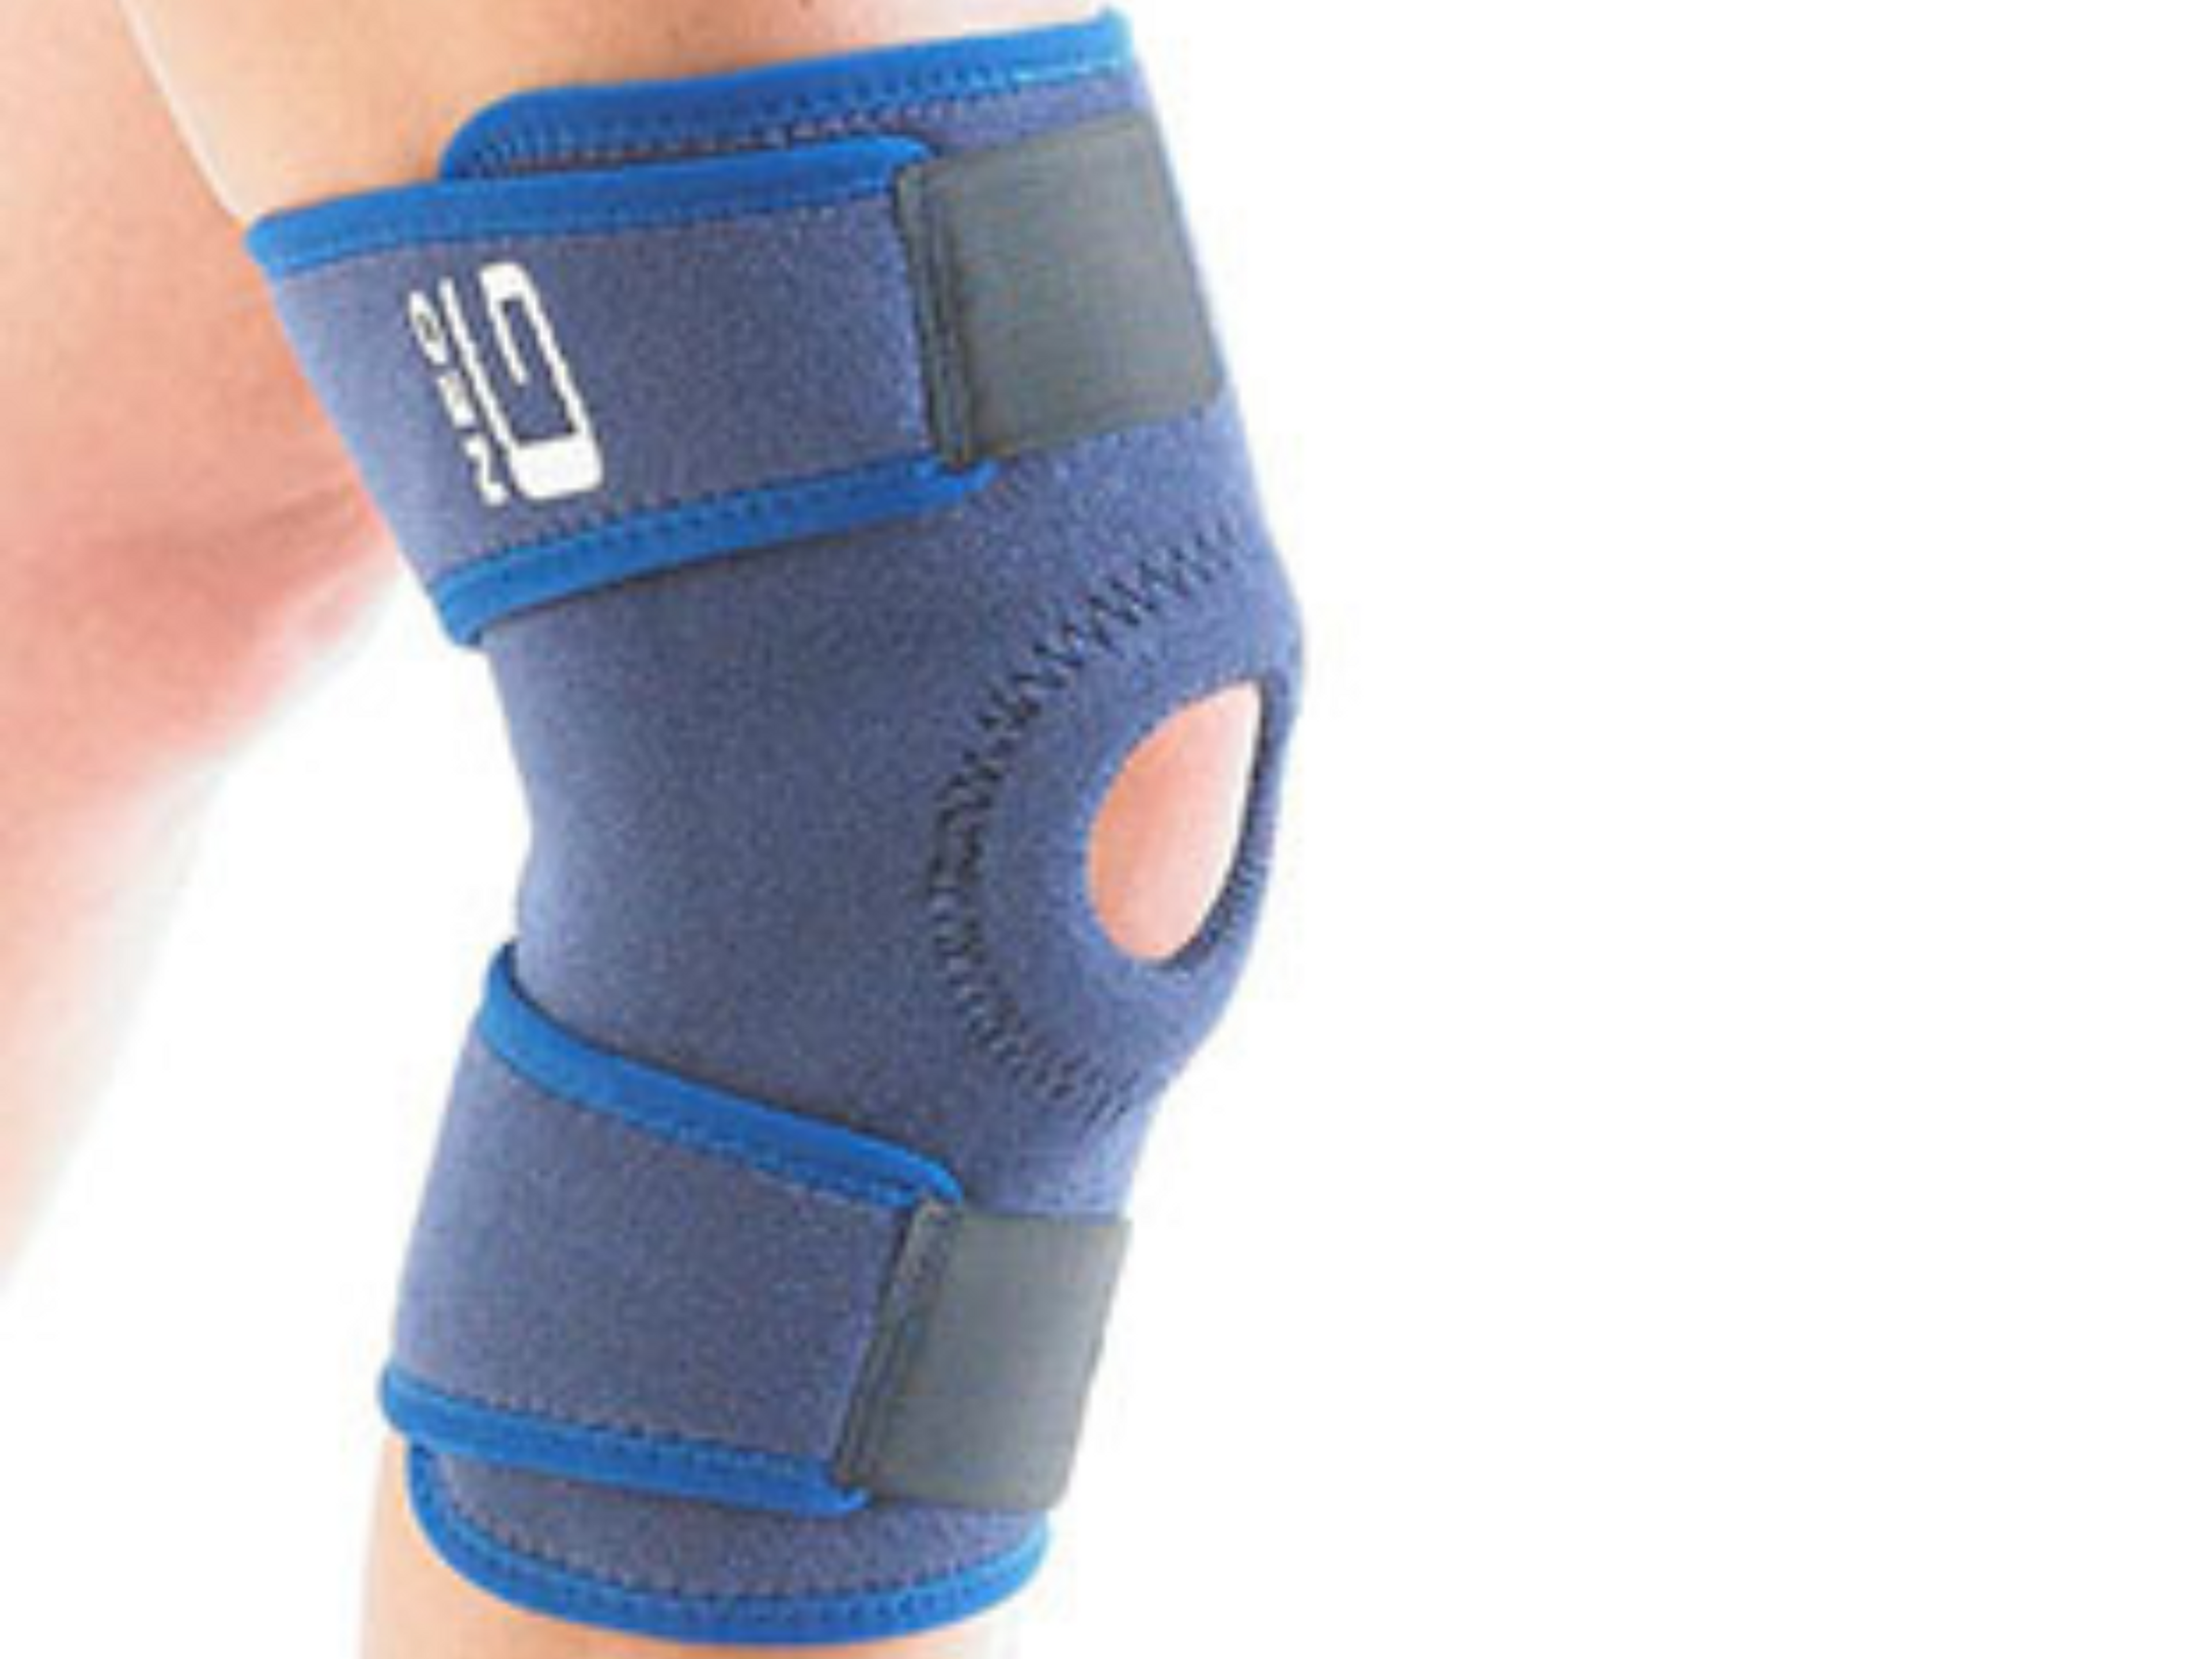 Soft knee brace without hinge.